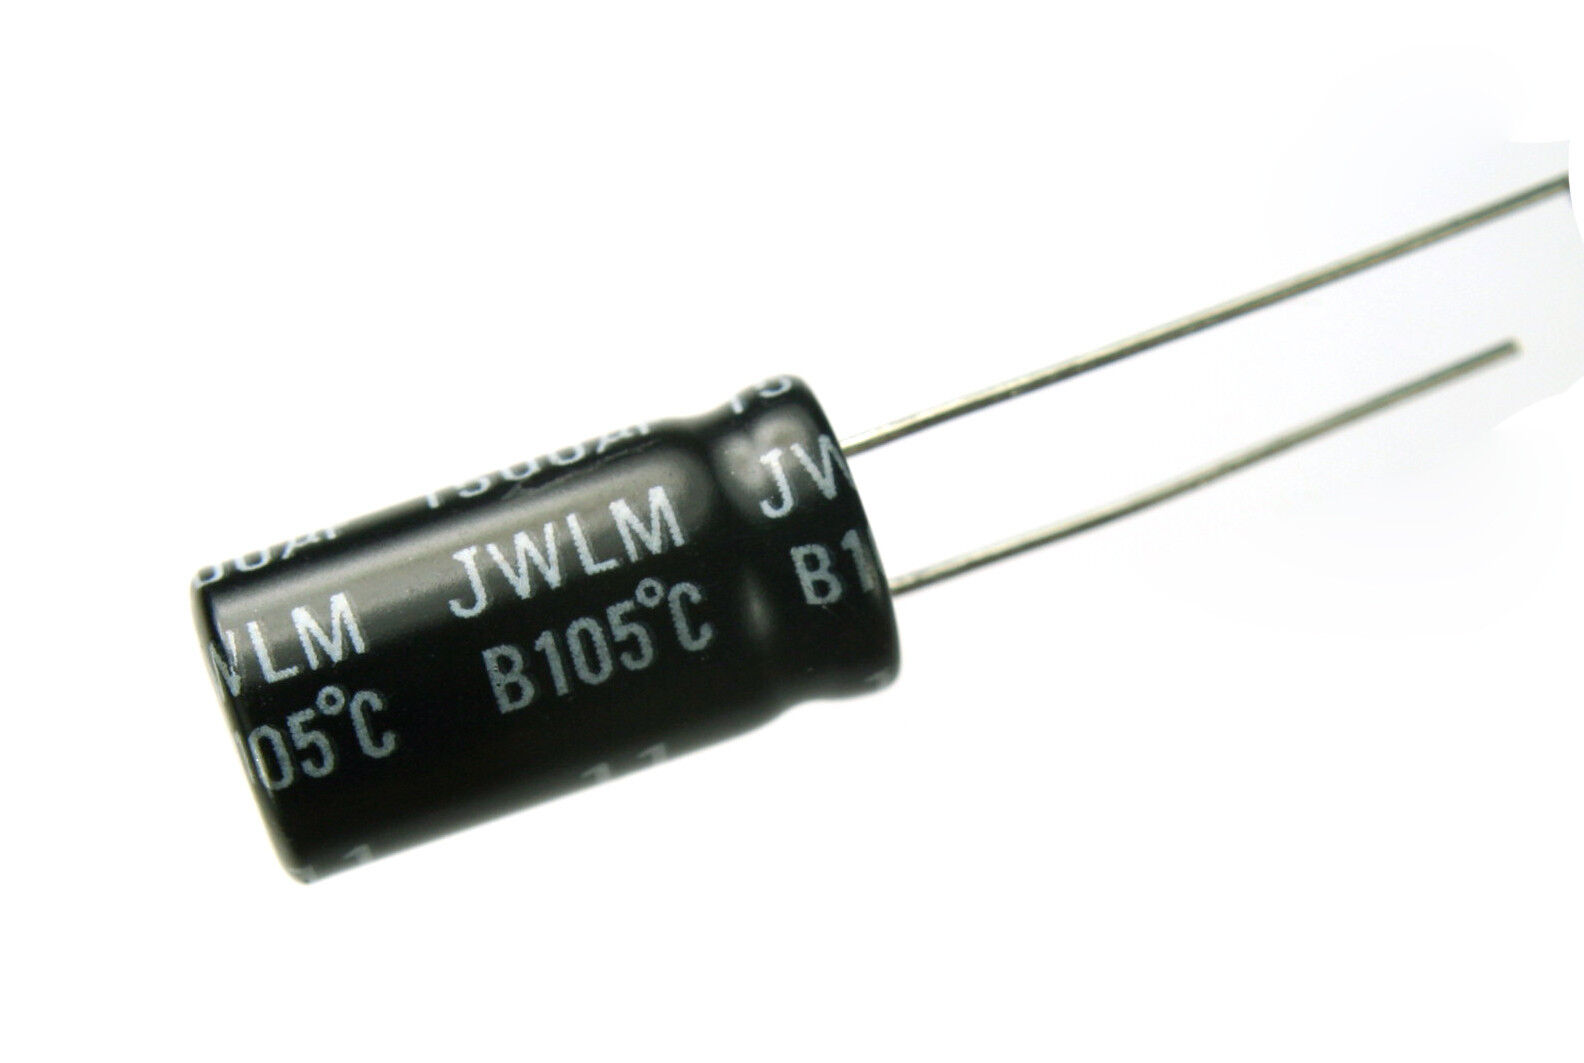 14pcs Illinois Capacitor JWLM 1500uF 6.3v 105C Radial Electrolytic Low Impedance